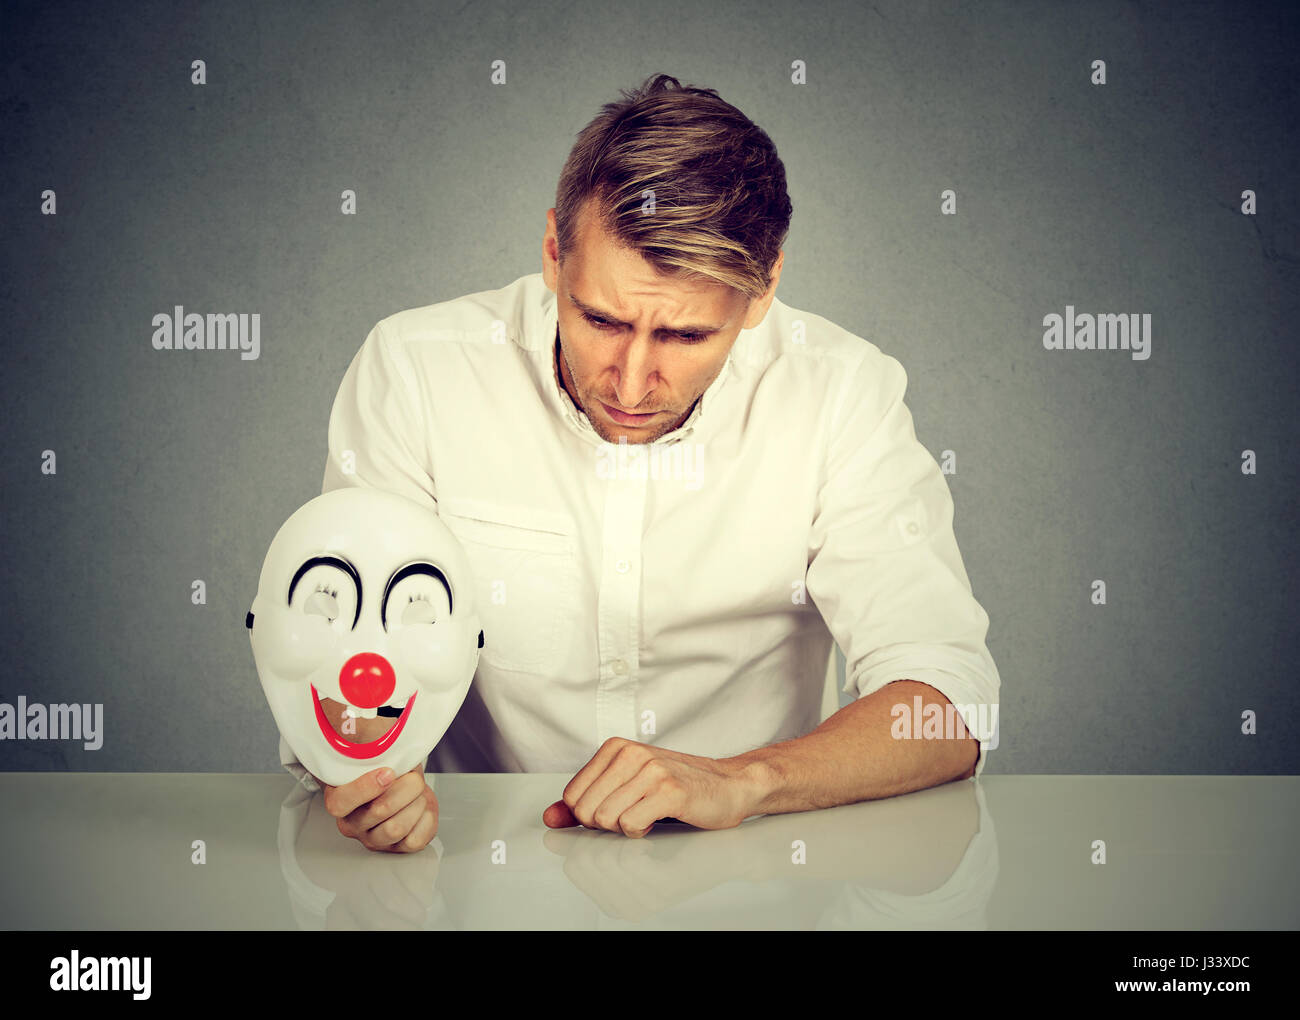 Porträt junge aufgeregt besorgt Mann mit traurigen Ausdruck Clownsmaske mit dem Ausdruck ihrer Fröhlichkeit Glück auf graue Wand Hintergrund isoliert halten. Menschlichen emot Stockfoto